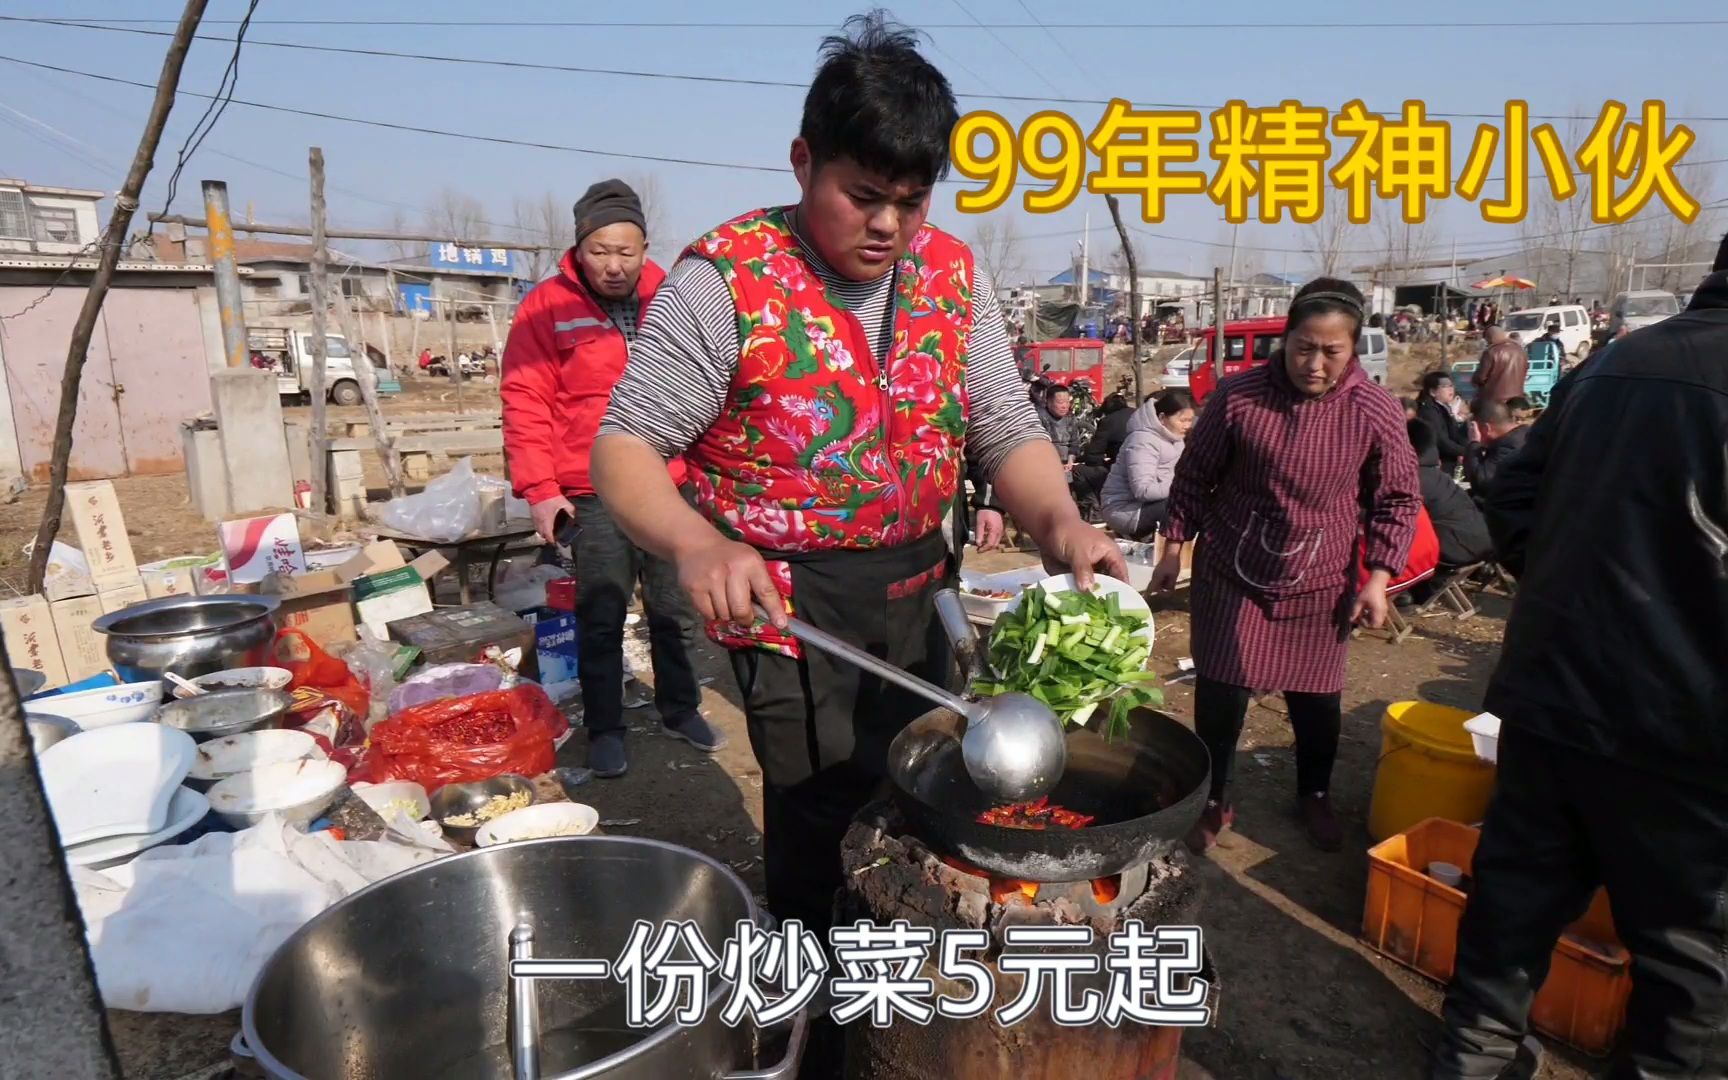 山东农村露天大集，99年小伙卖炒菜，5元一份起，干净卫生人气旺